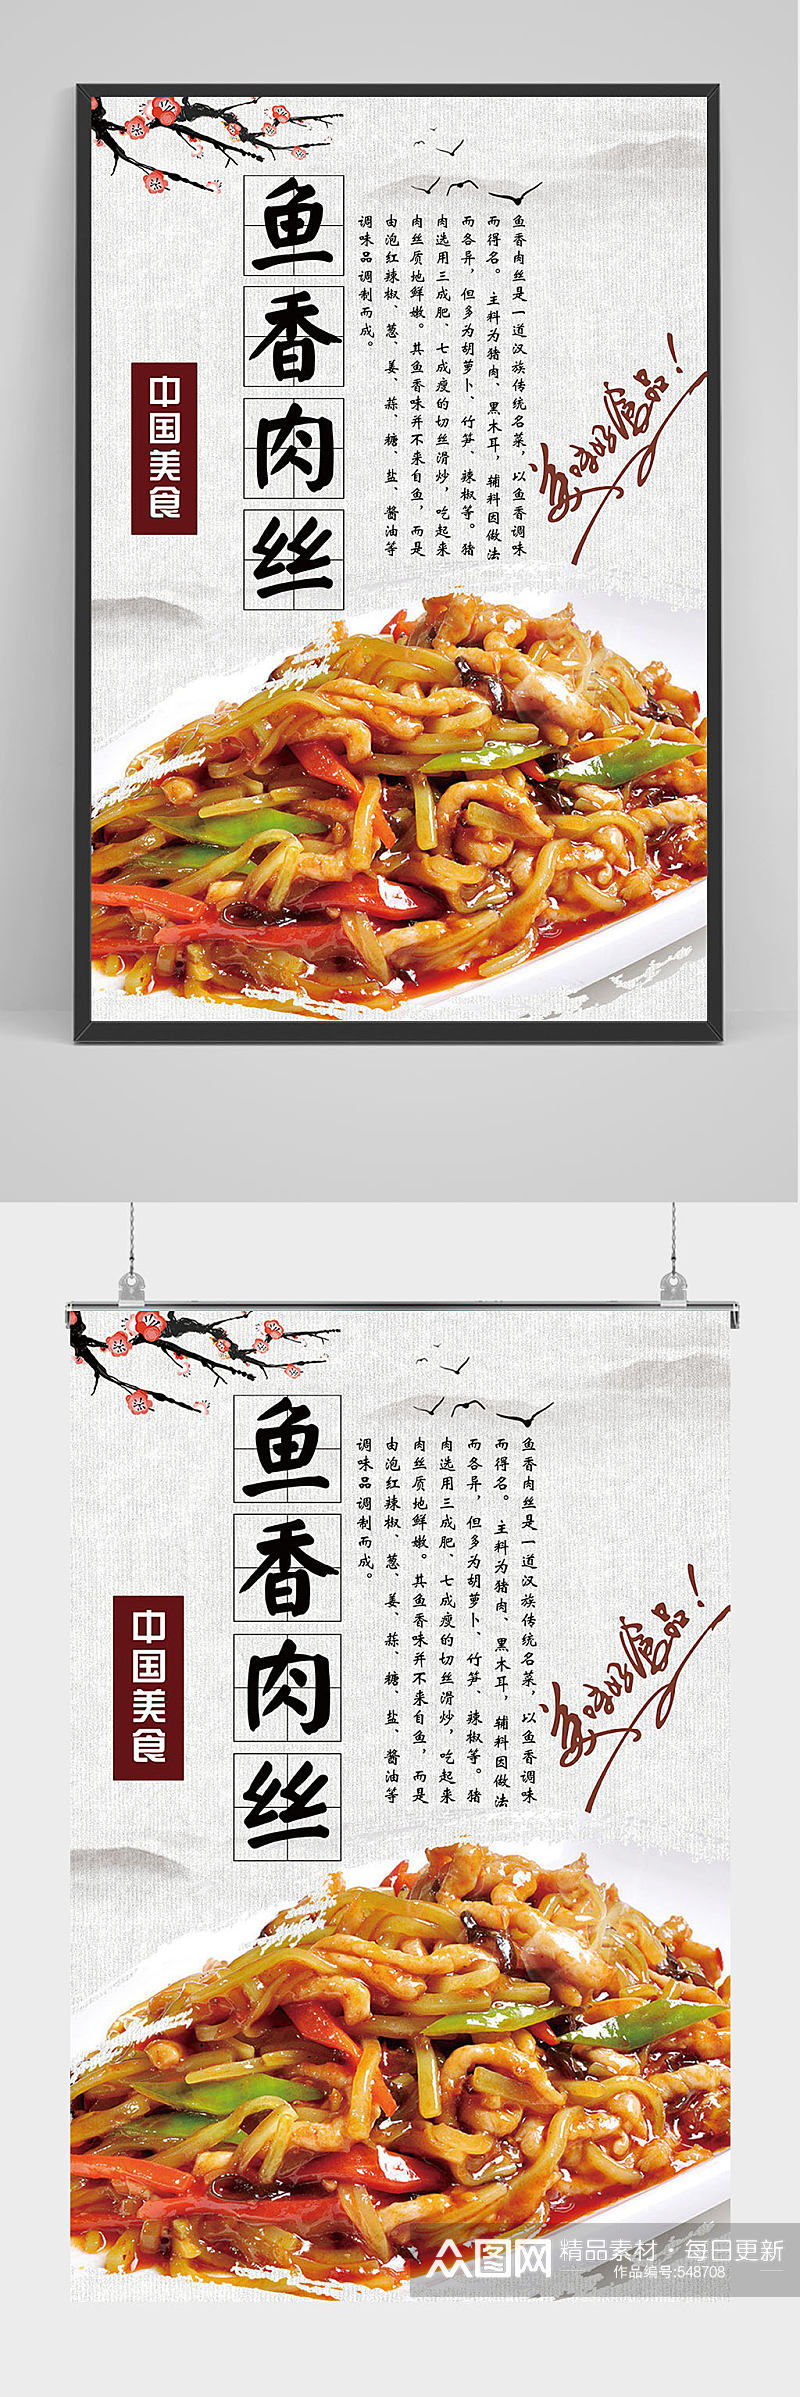 中国美食鱼香肉丝海报设计素材